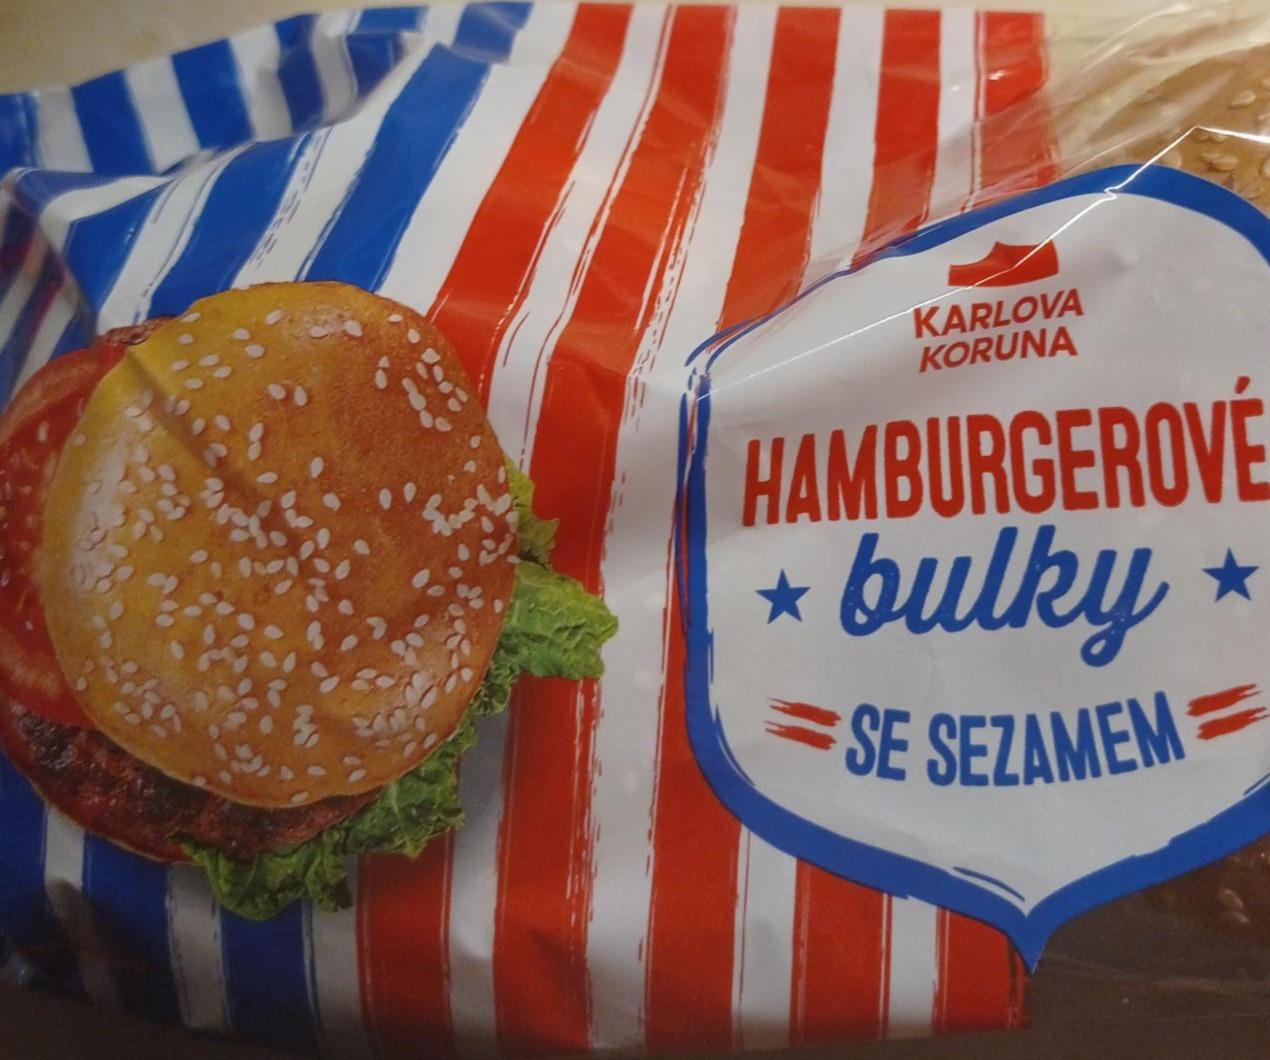 Fotografie - hamburgerové bulky se sezamem Karlova Koruna